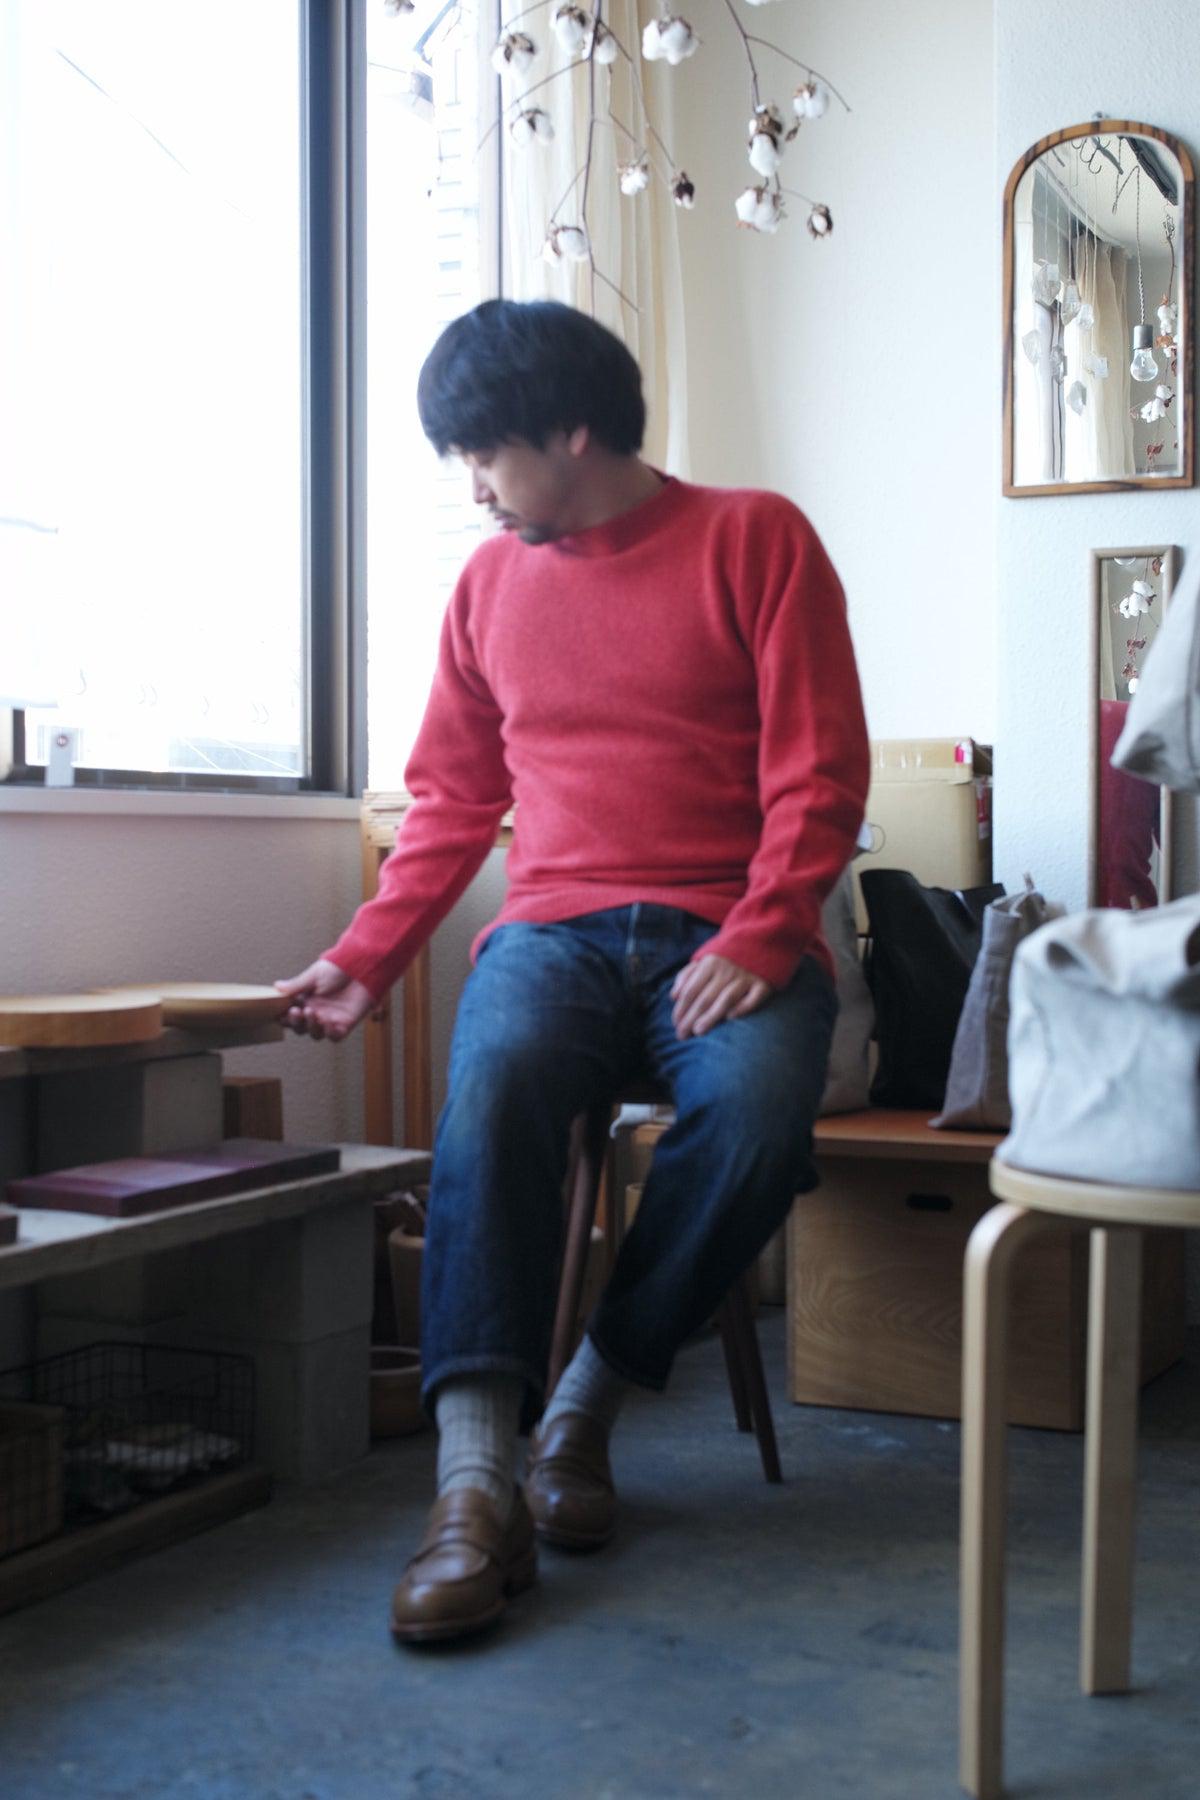 MITTAN / wool sweater red orange KN-02 / unisex